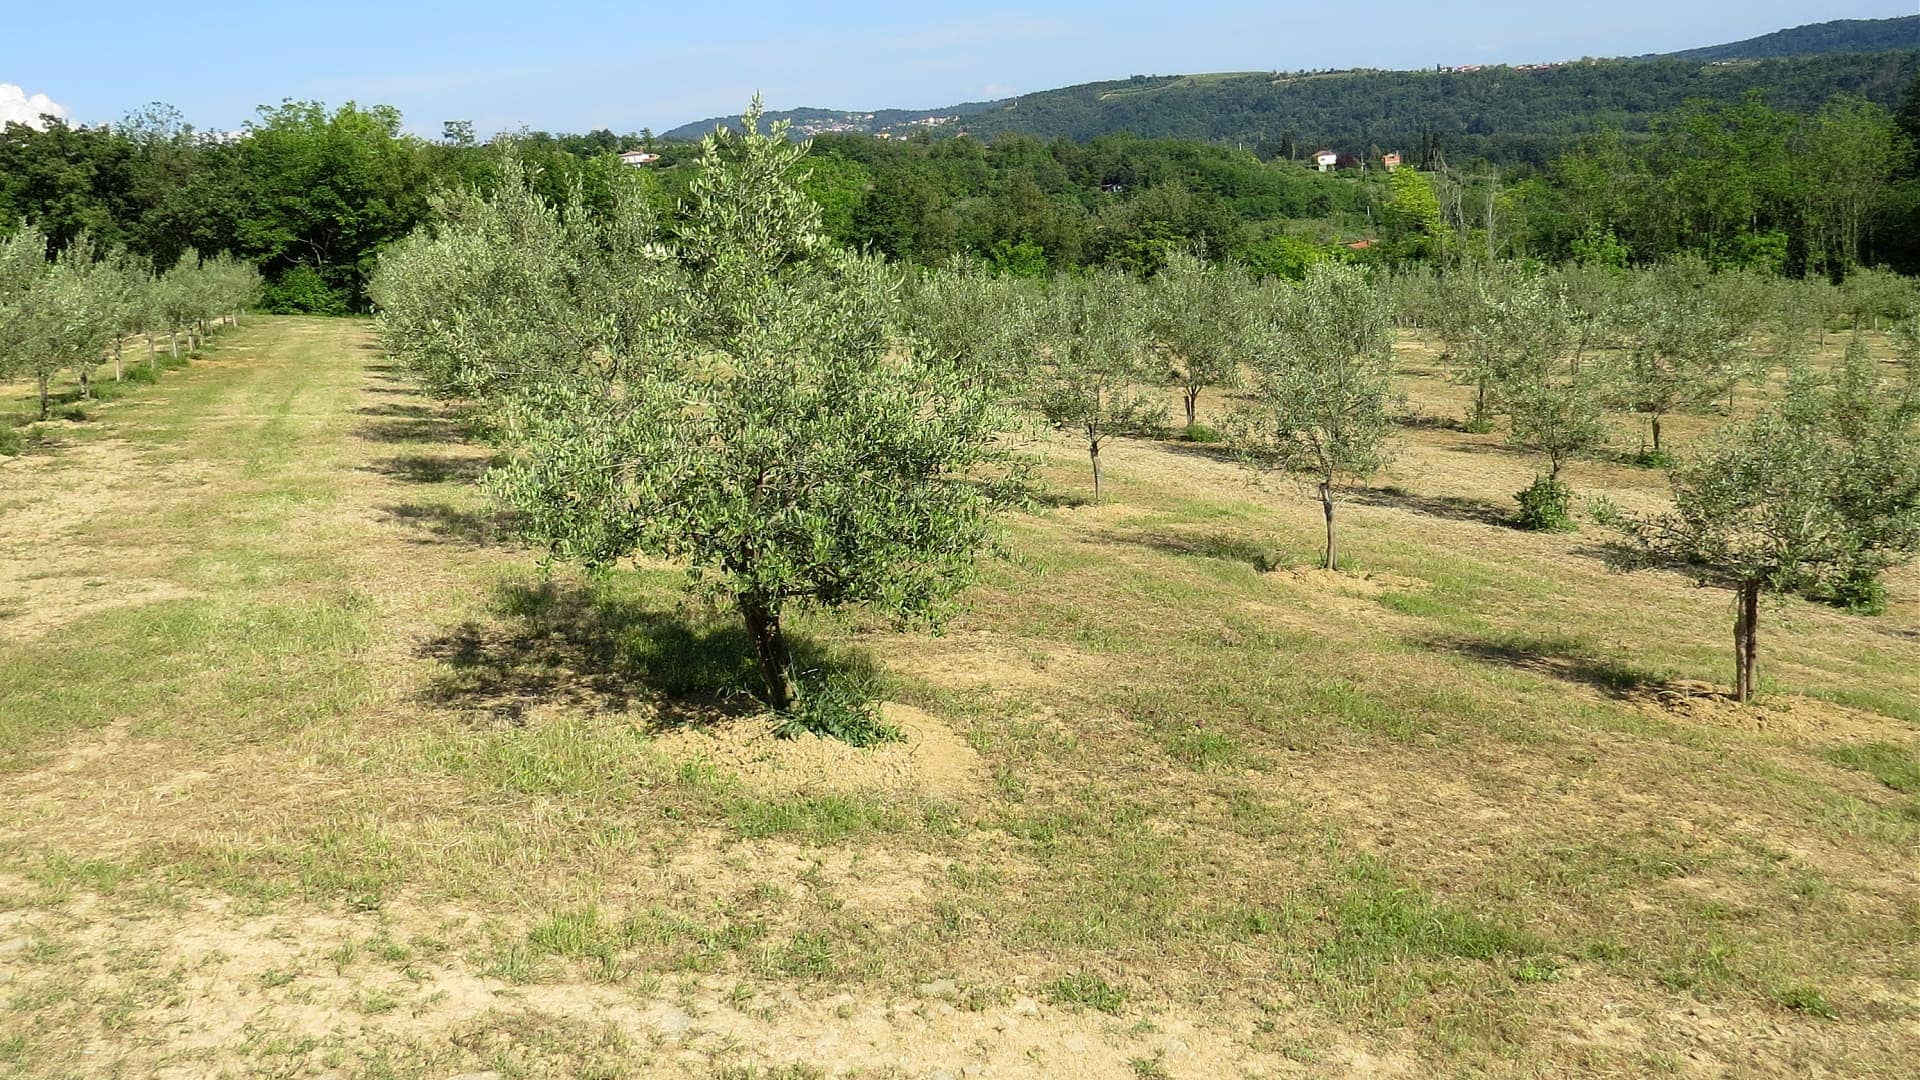 概況-斯洛文尼亞的生產-儘管乾旱-害蟲-橄欖油時代-收穫頗豐